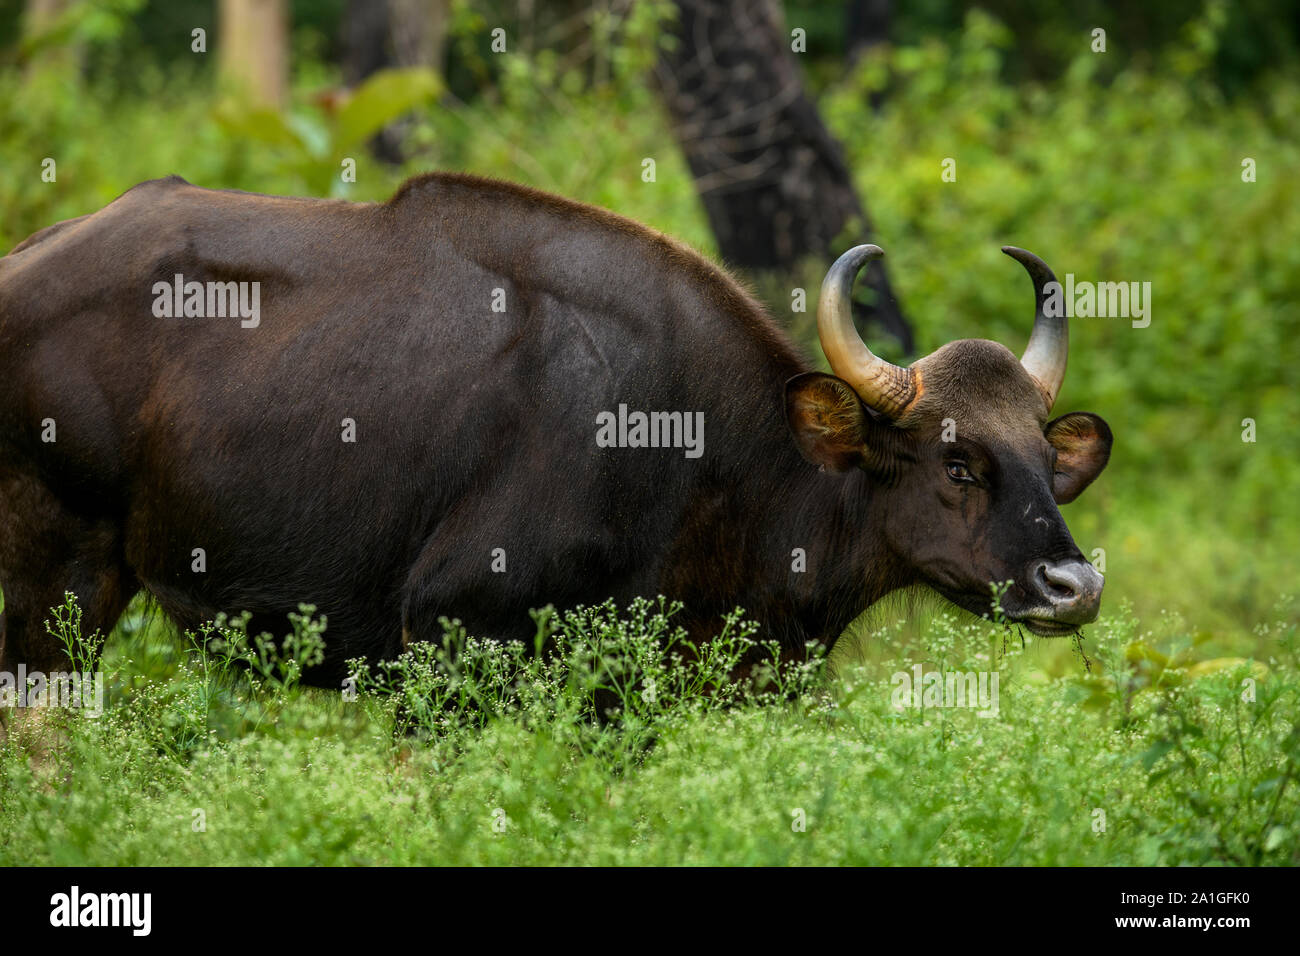 Der Gaur, genannt auch die indische Bisons, ist die größte lebenden Rindern, Herde von Indischen gaurs in einem Tier finden. Indische gaur Familie, Kalb Füttern Milch Stockfoto